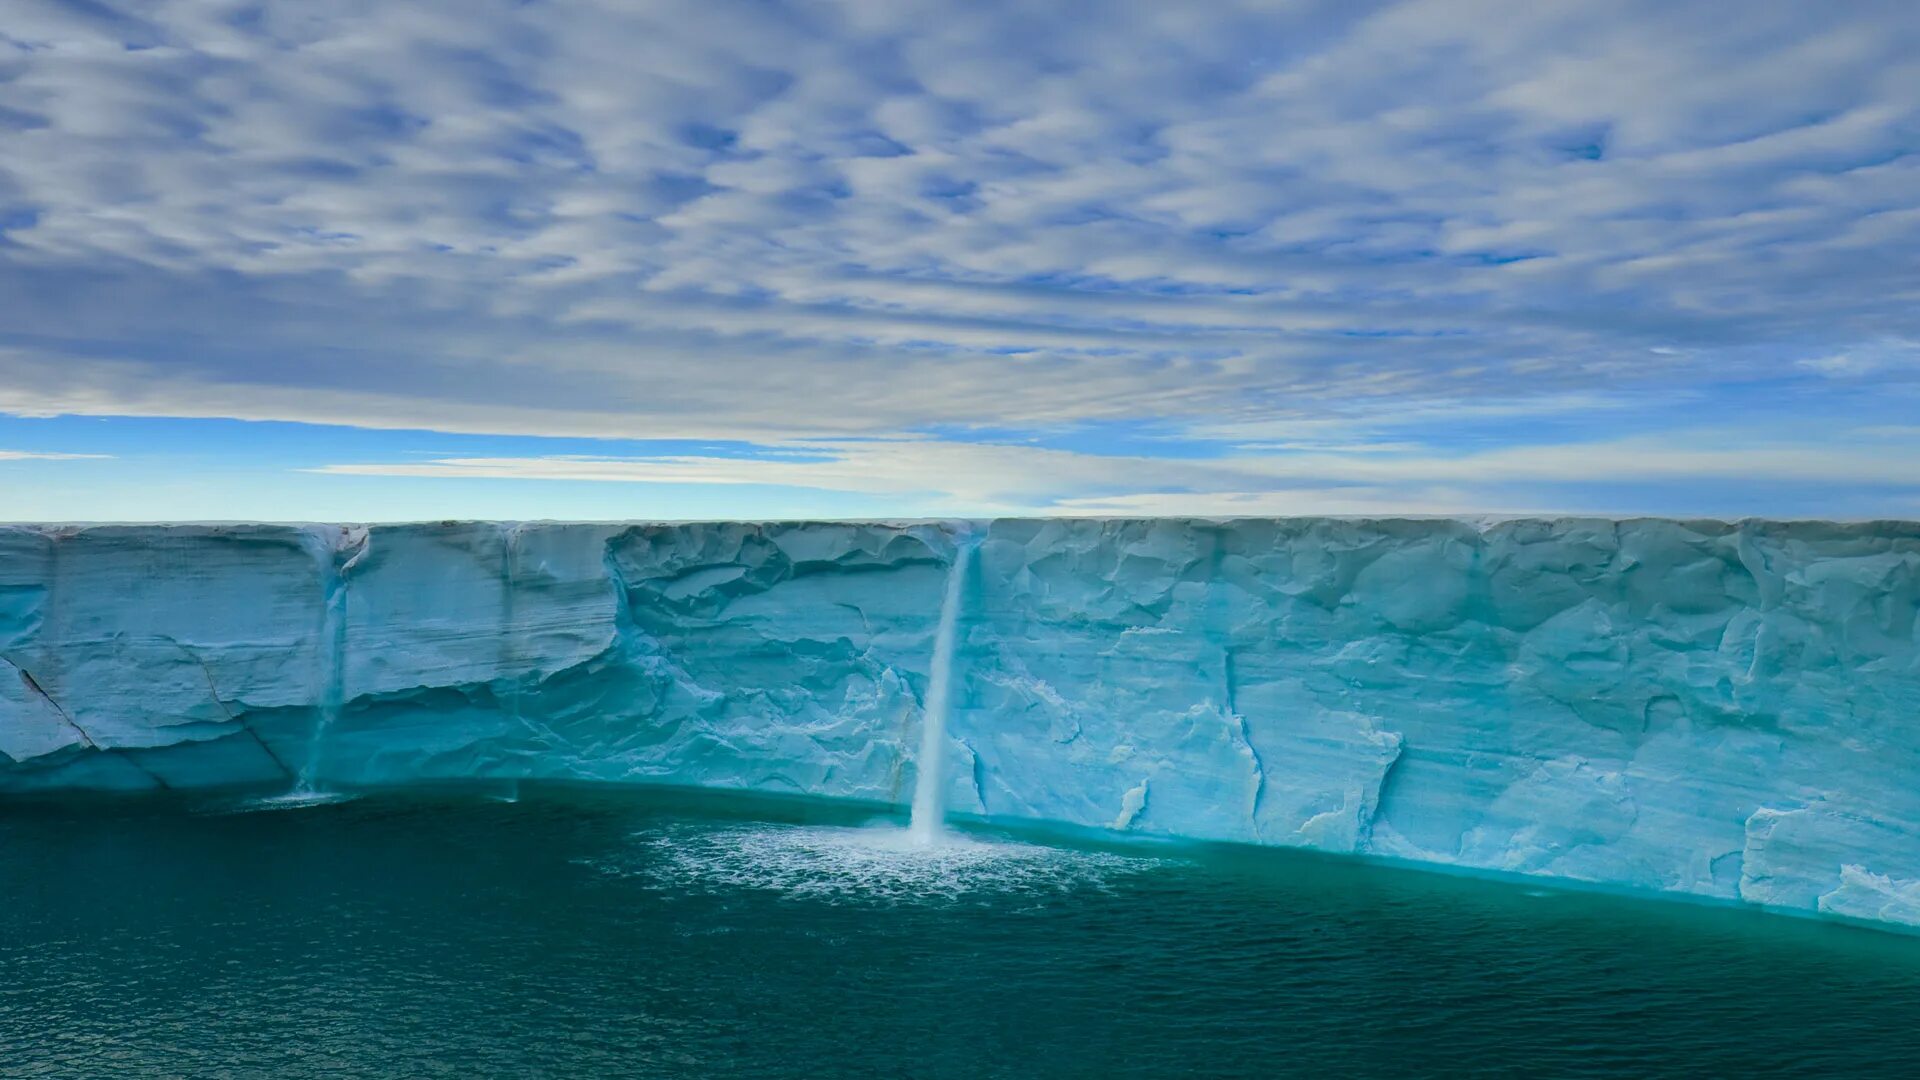 Реалми видео обои. Ледниковые водопады Норвегии. Обои на рабочий стол меняющиеся. Ледяные водопады в Норвегии. Водопад из ледника.